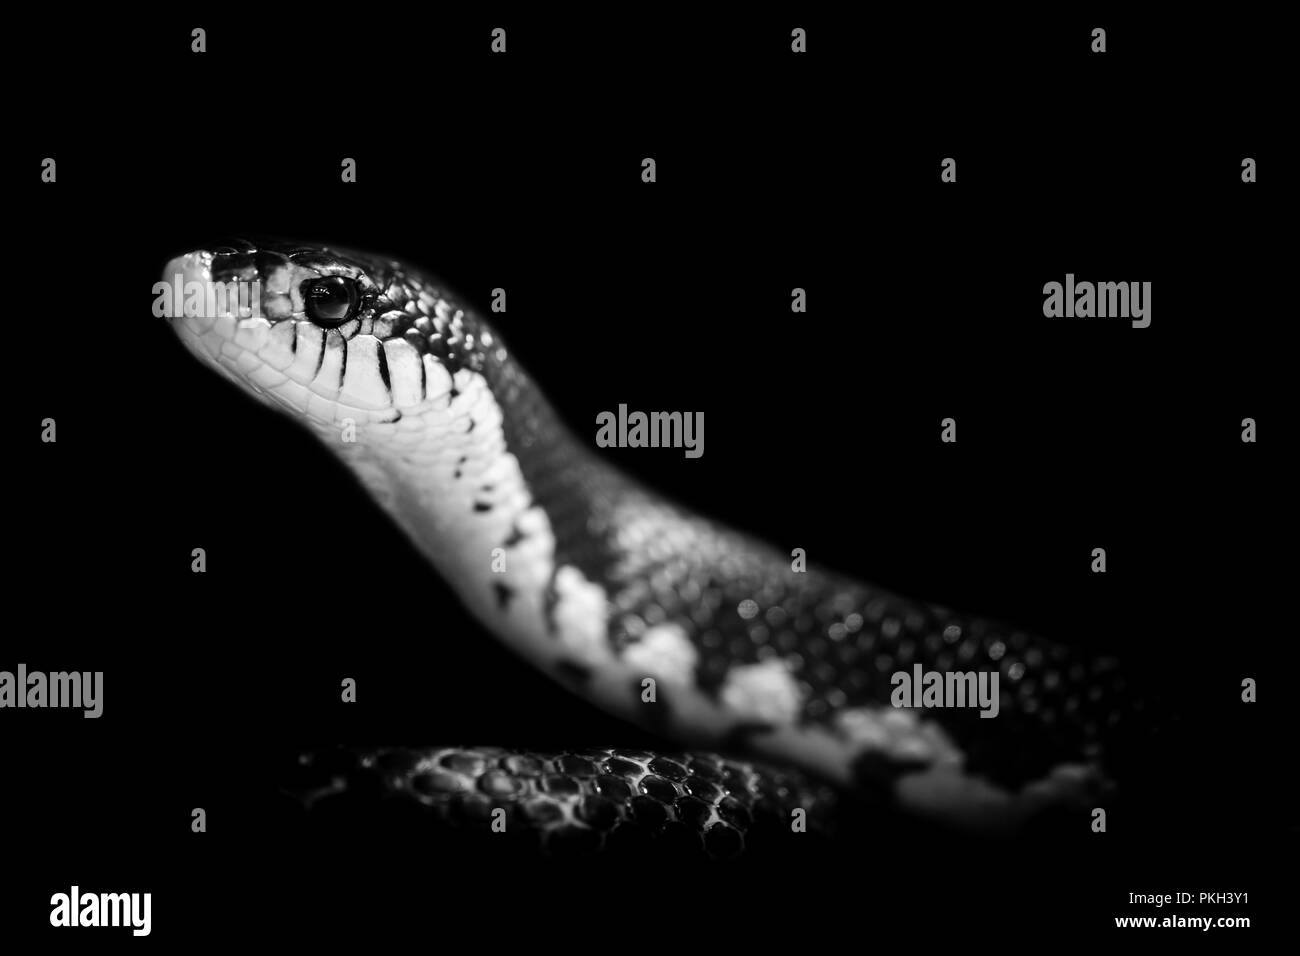 snake isolated on black background Stock Photo